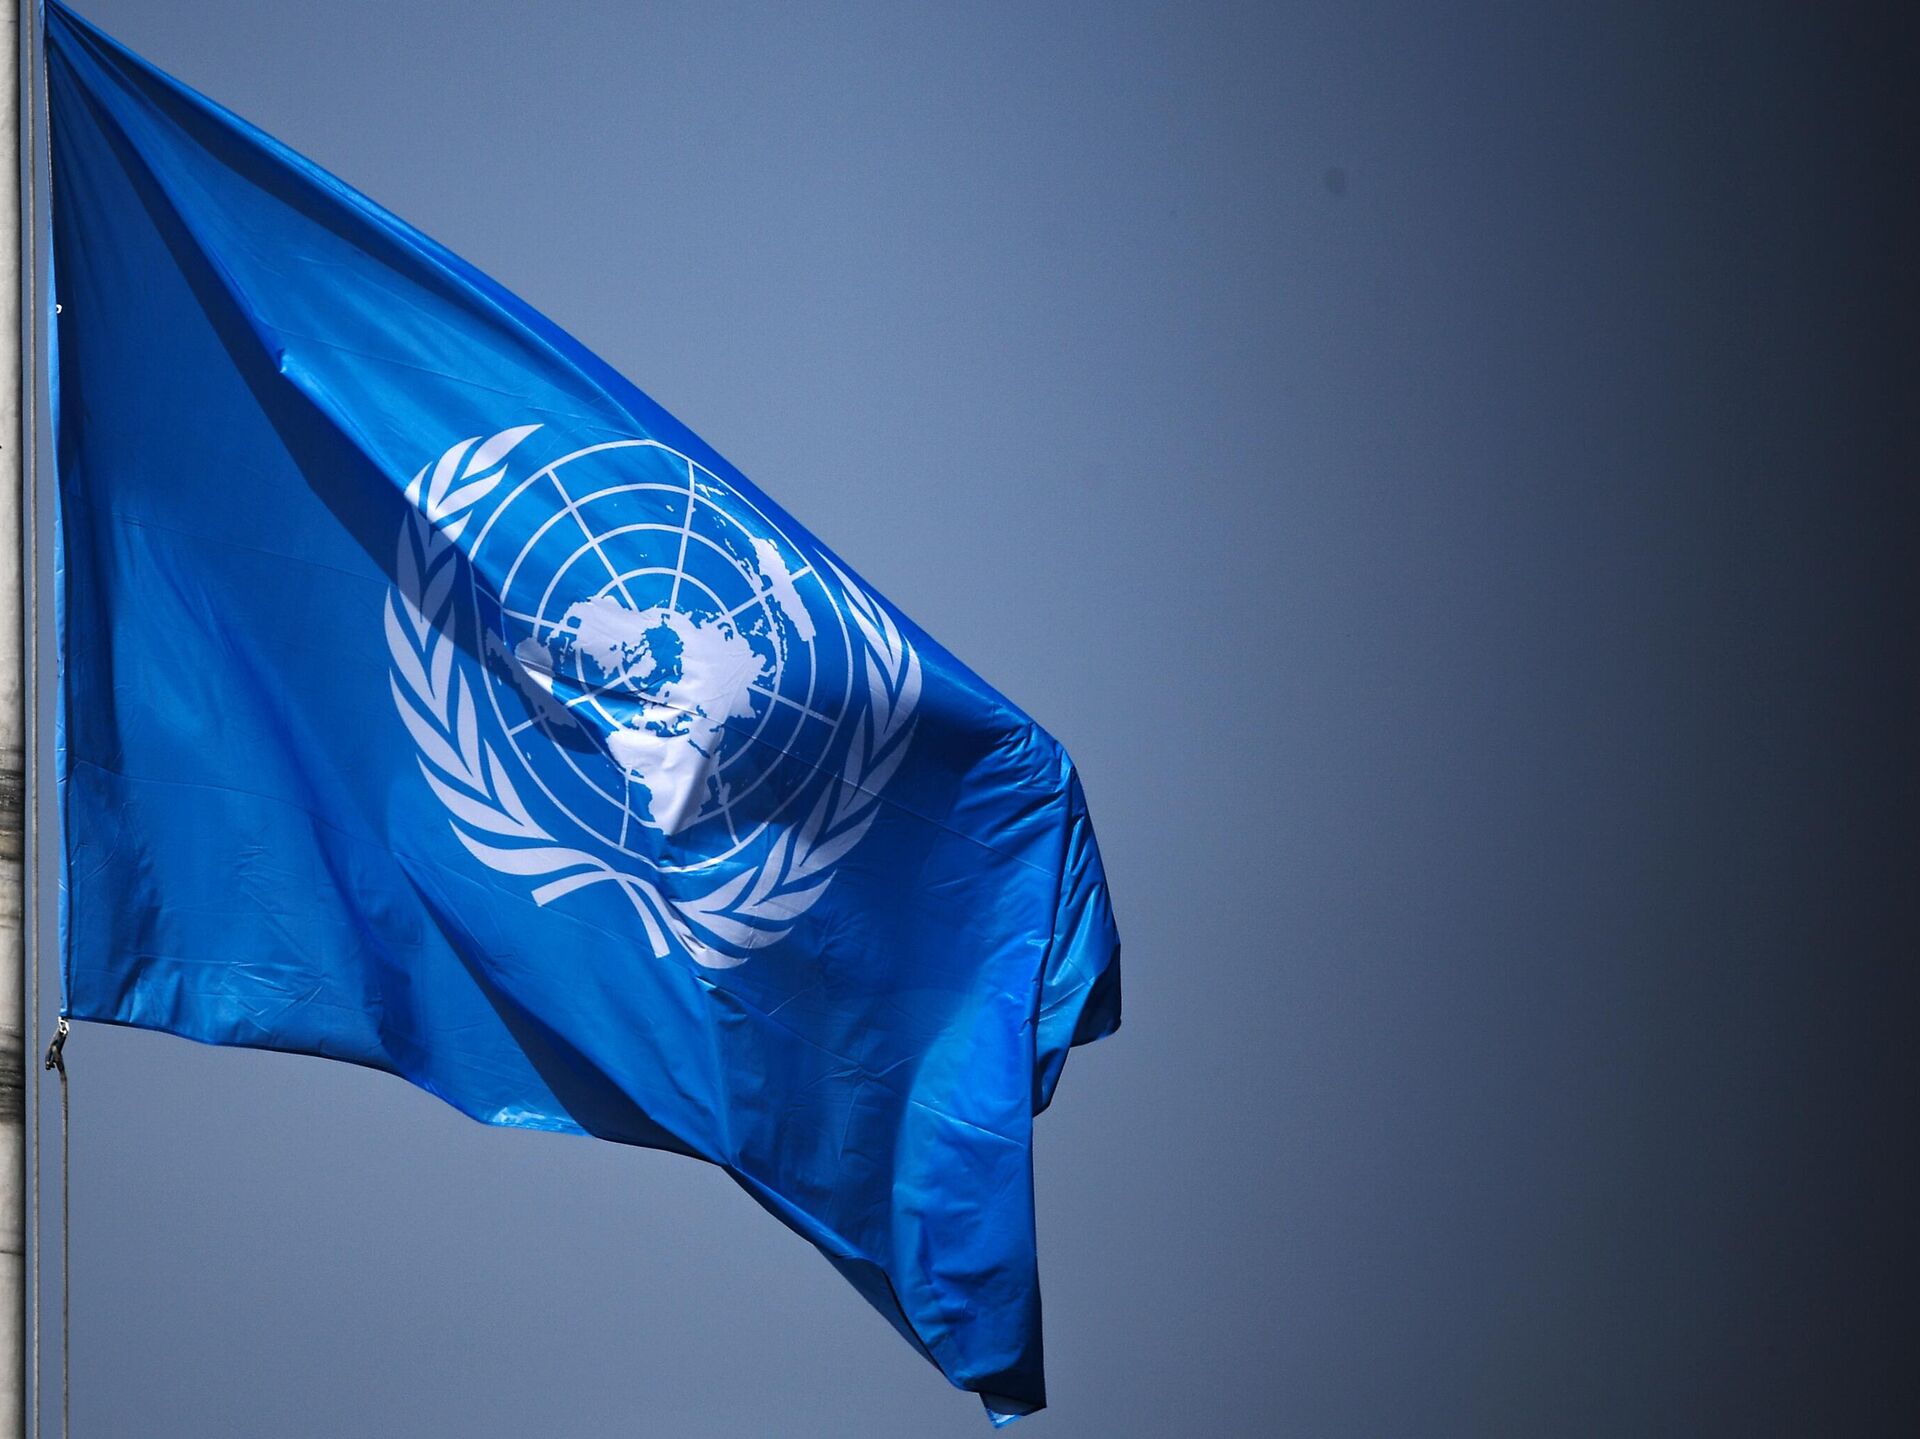 Р оон. Флаг ООН. Флаг организации Объединенных наций. Генеральная Ассамблея ООН флаг. Организация Объединенных наций (ООН).